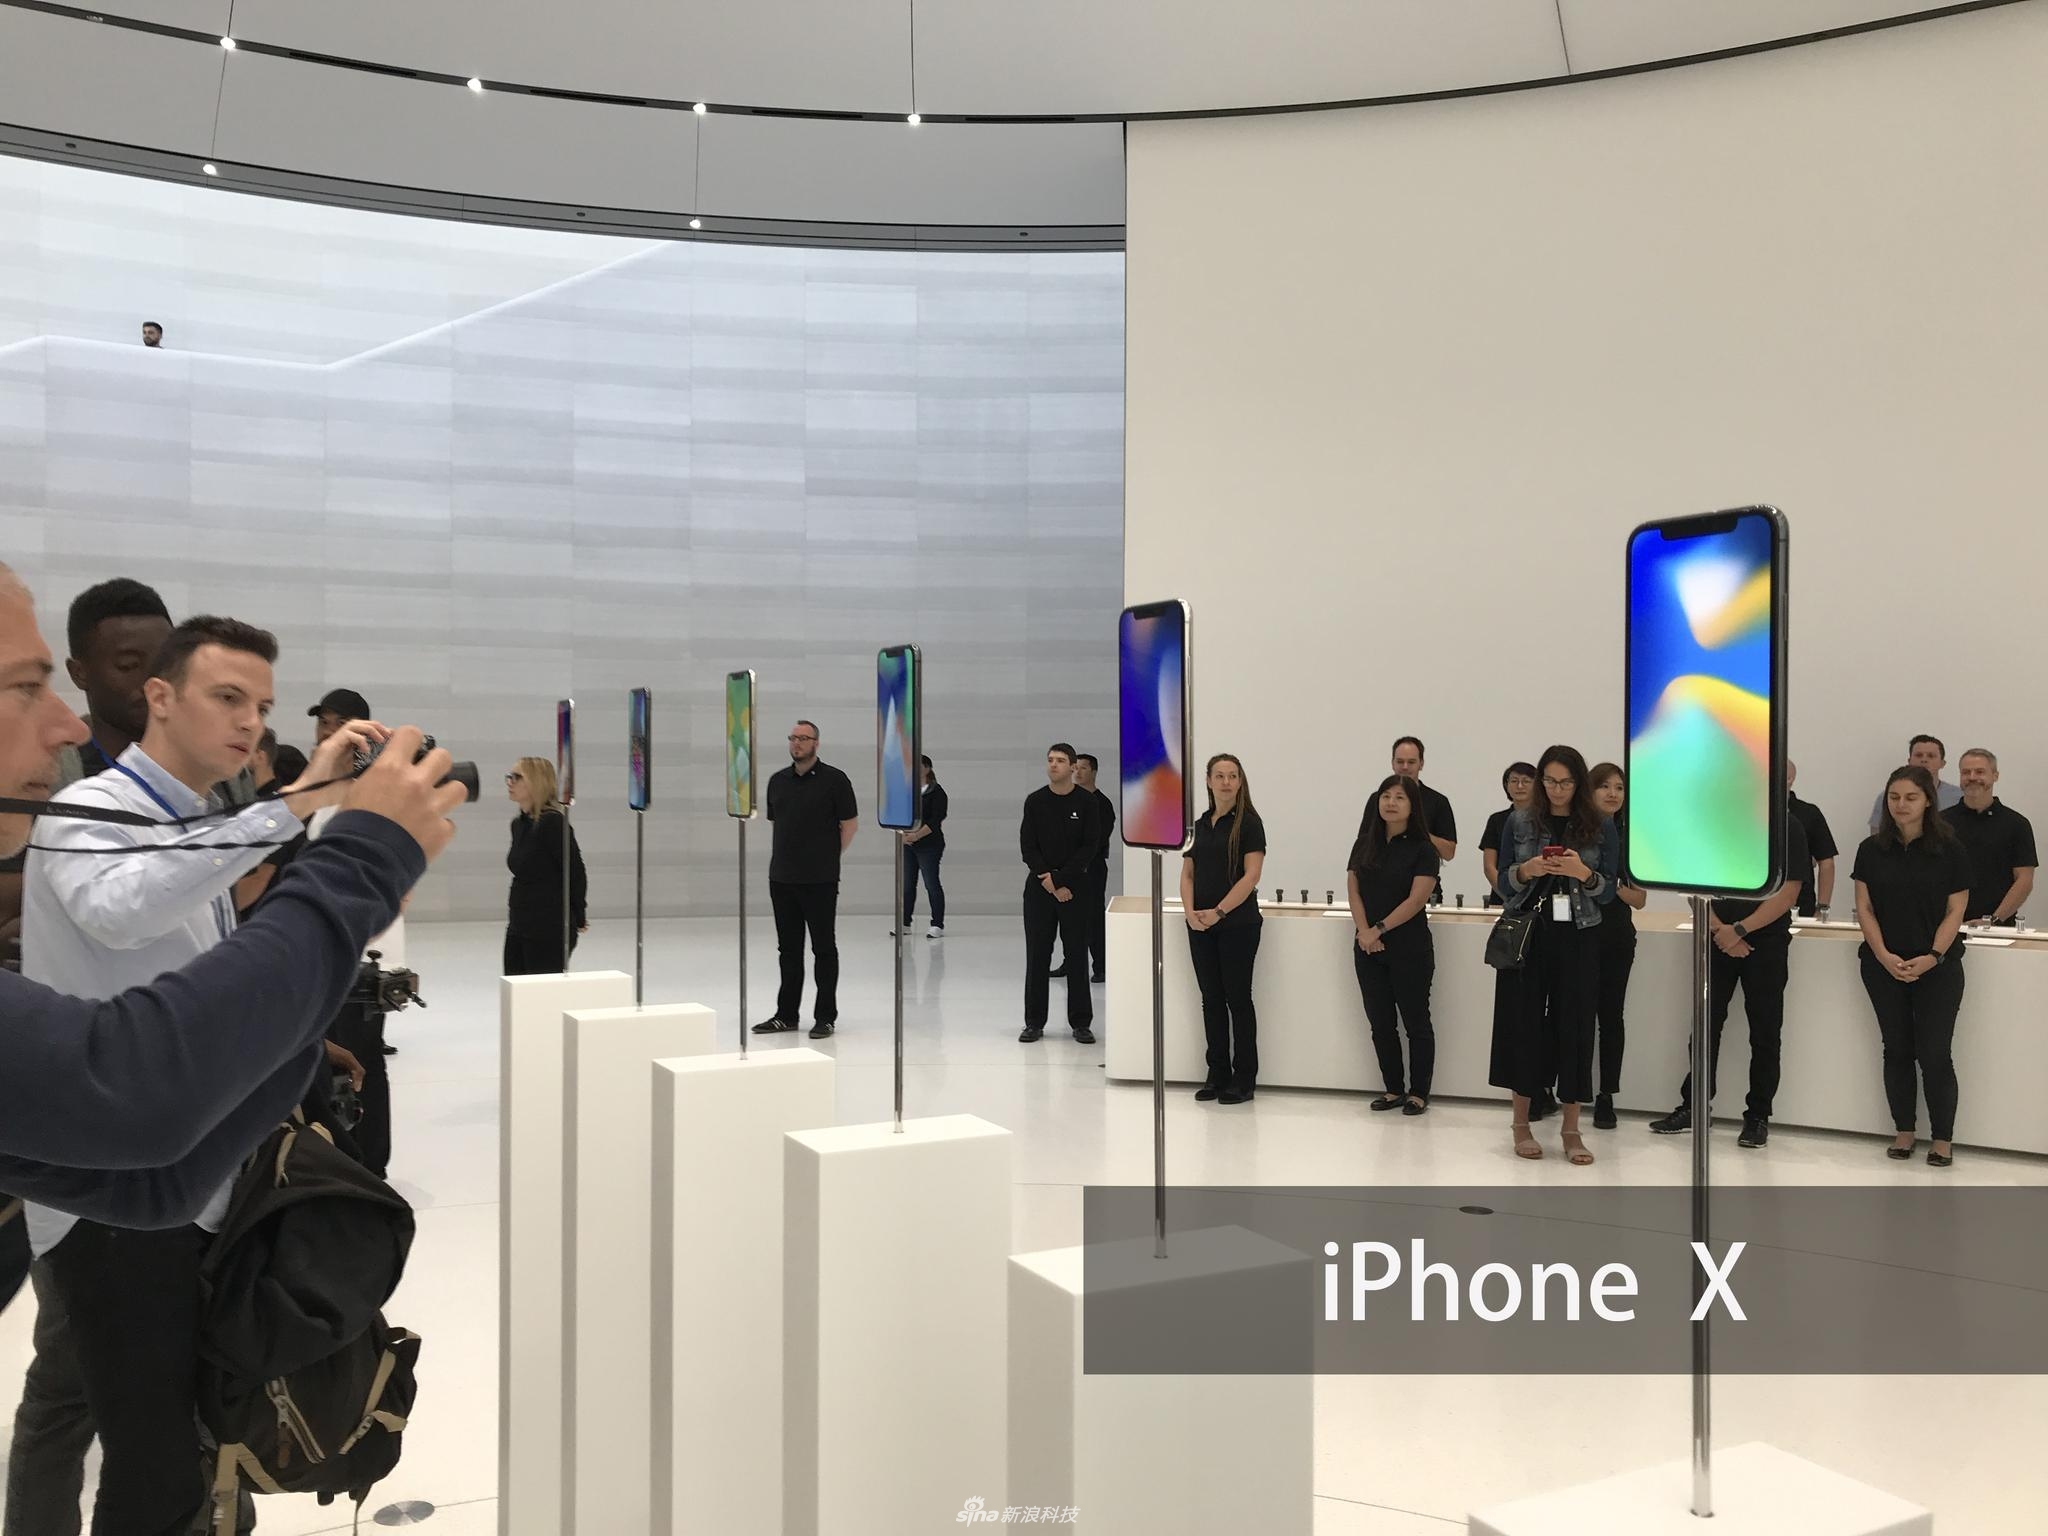 iPhoneX真机现场实拍图赏 黑白版正面没差别